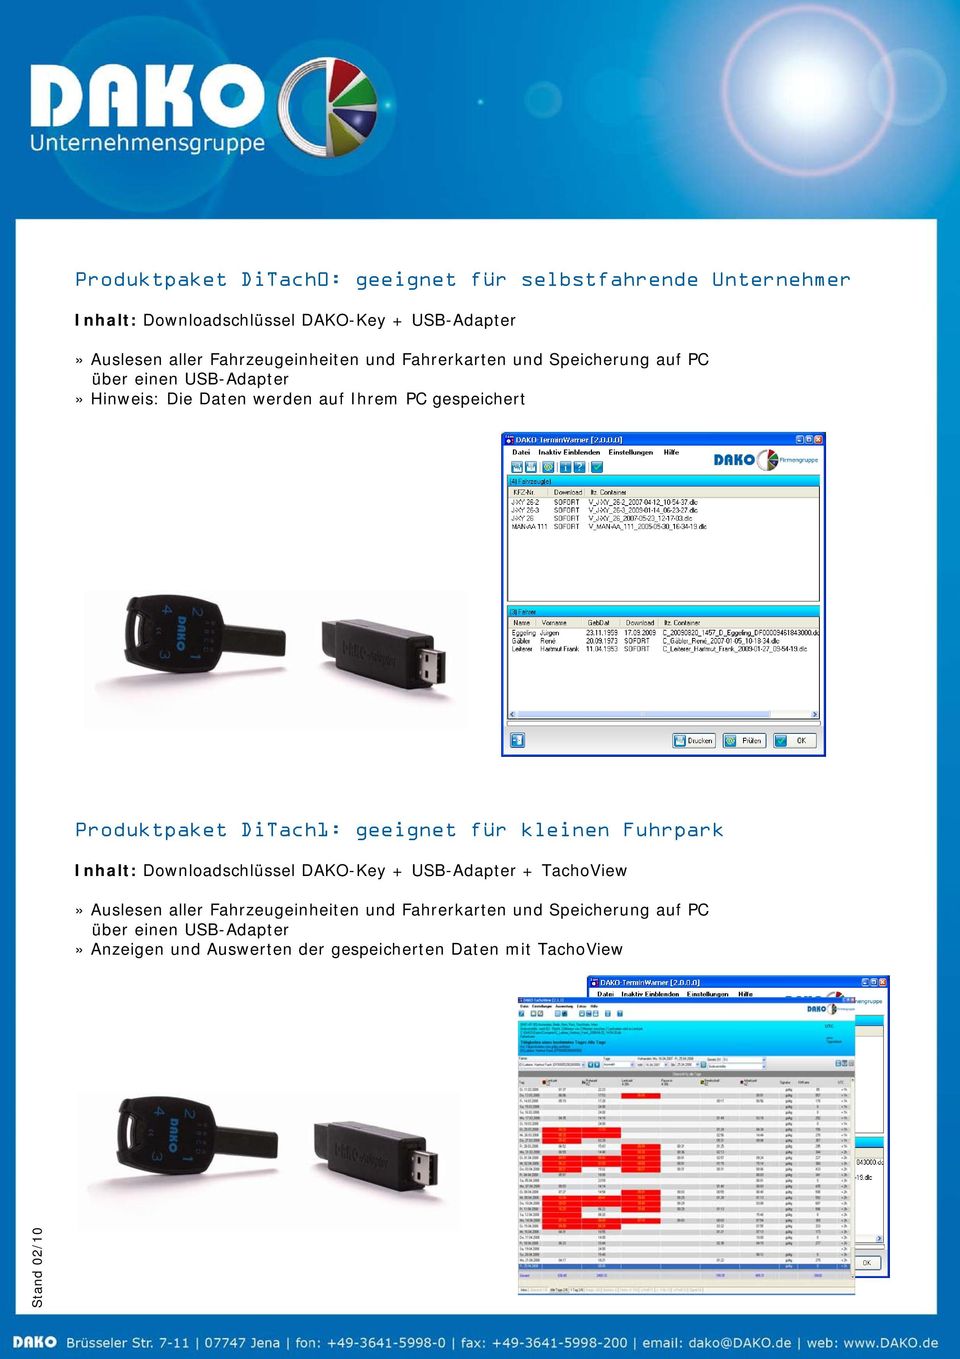 Produktpaket DiTach1: geeignet für kleinen Fuhrpark Inhalt: Downloadschlüssel DAKO-Key + USB-Adapter + TachoView» Auslesen aller